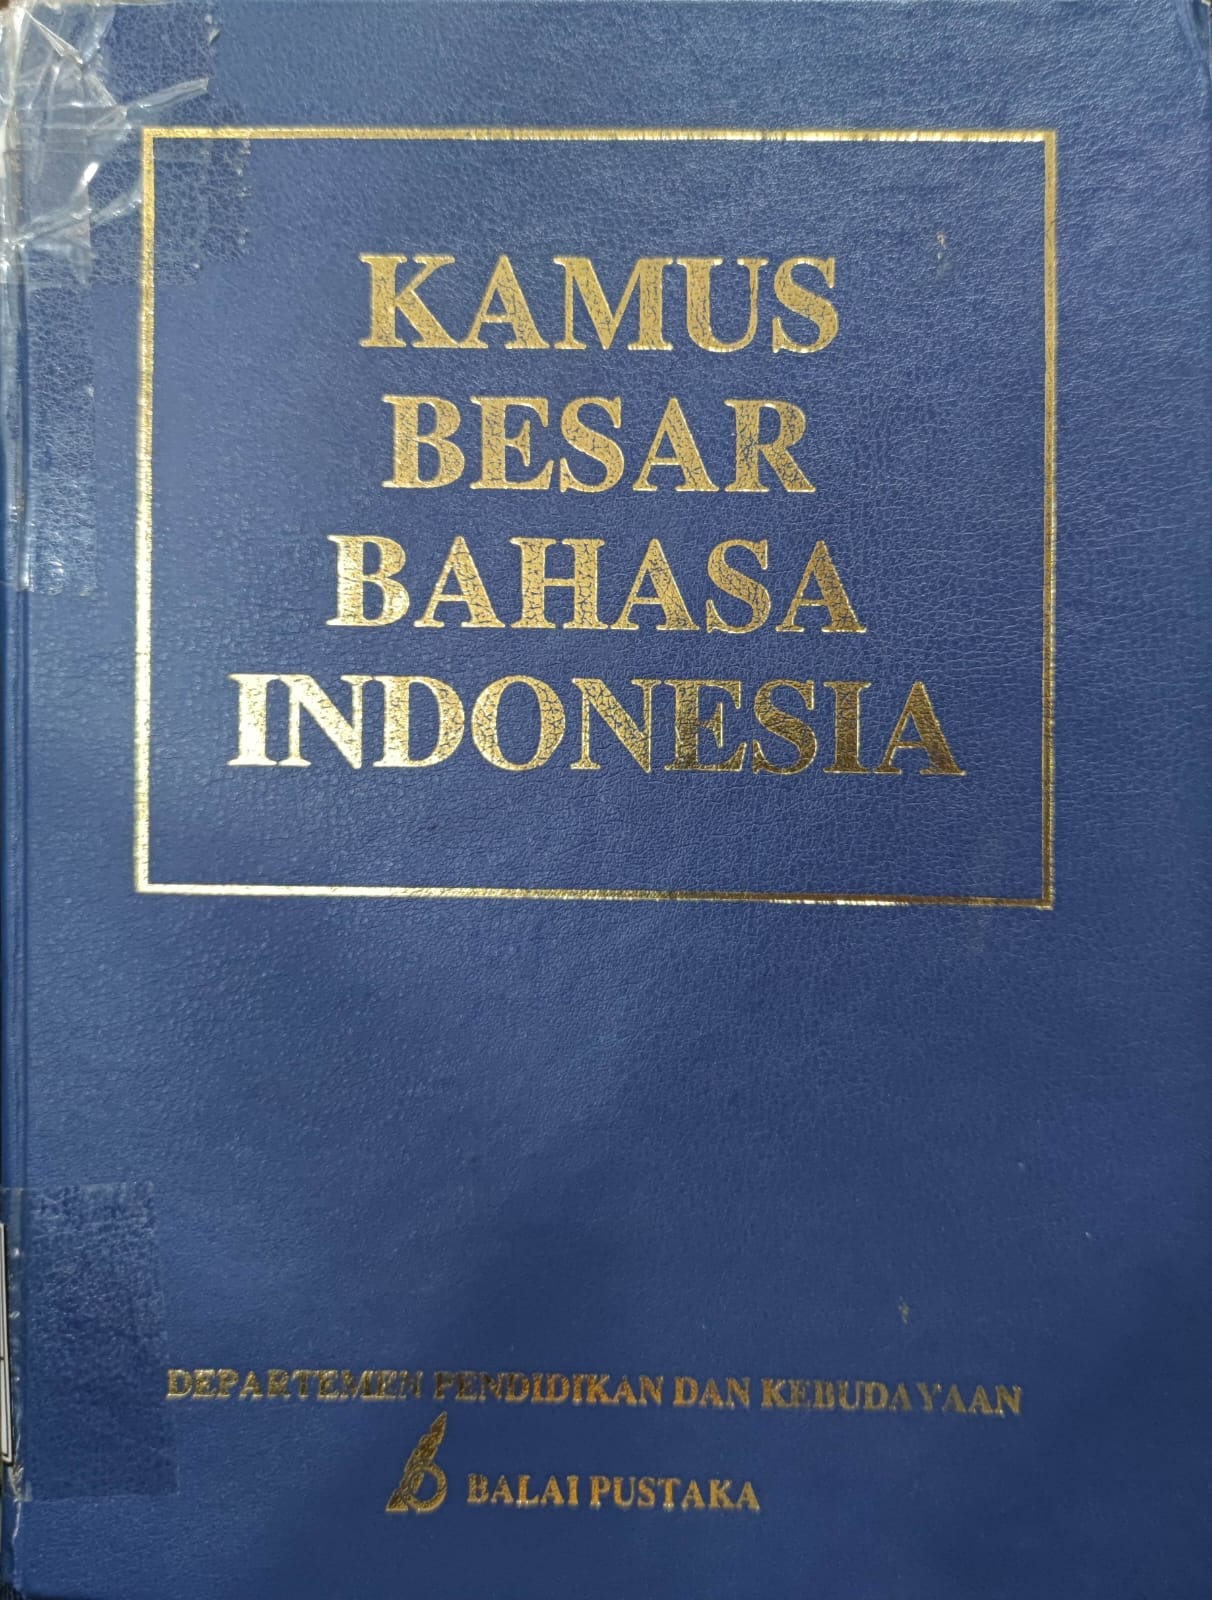 Kamus besar bahasa Indonesia edisi kedua